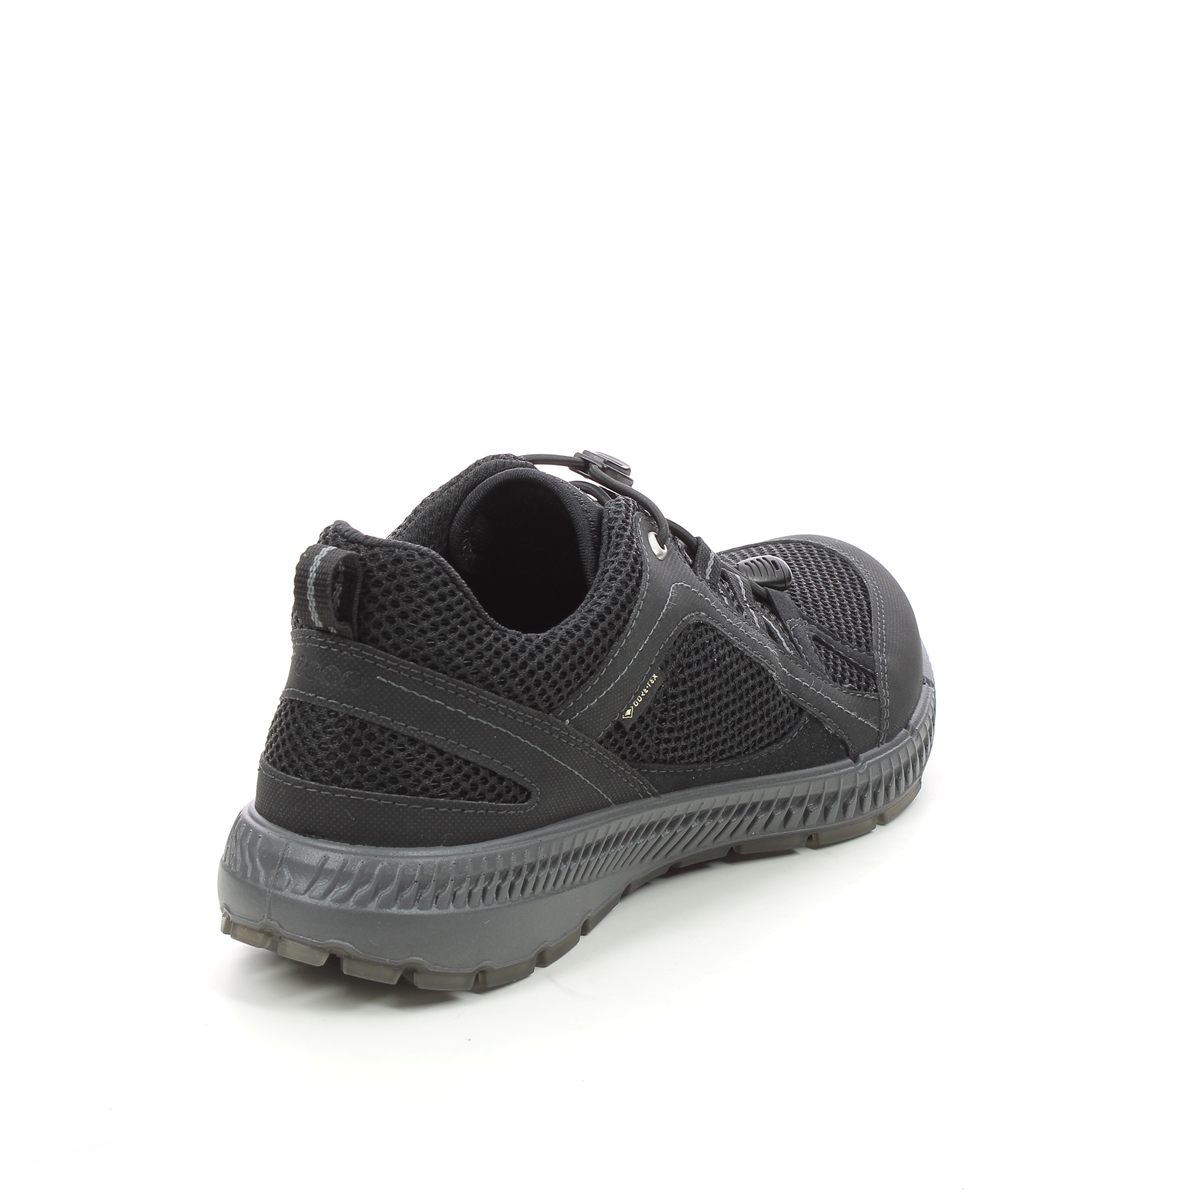 ECCO Terracruise Gtx 843063-51052 Walking Shoes